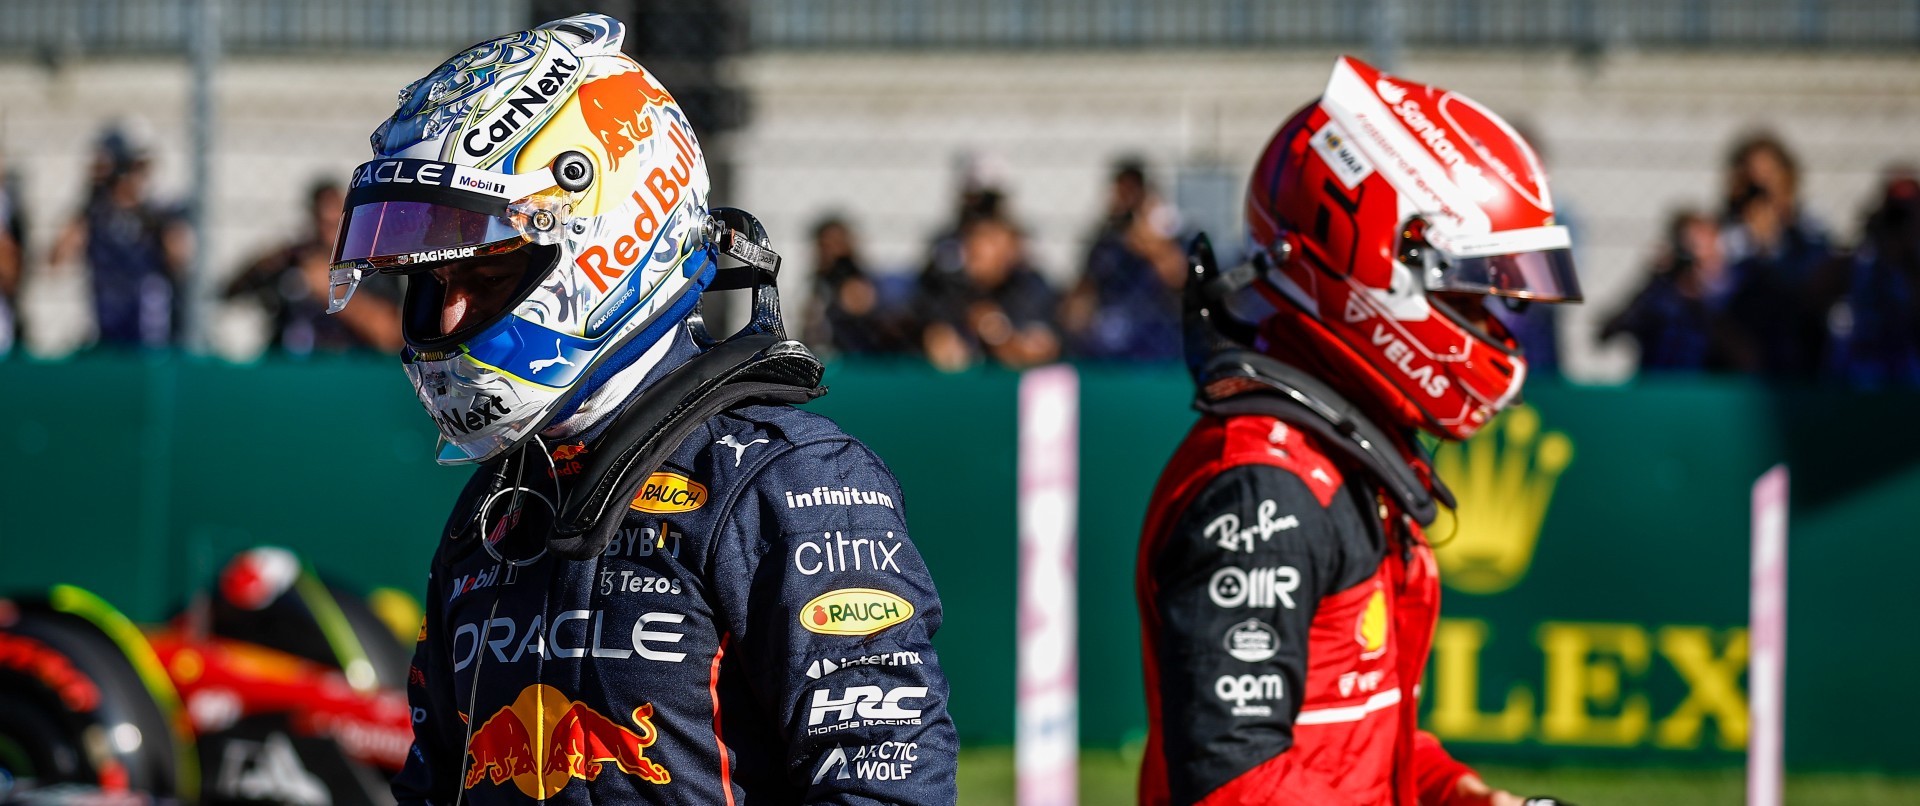 Max Verstappen dan Charles Leclerc Dapat Penalti, Start di GP Belgia dari Posisi Belakang